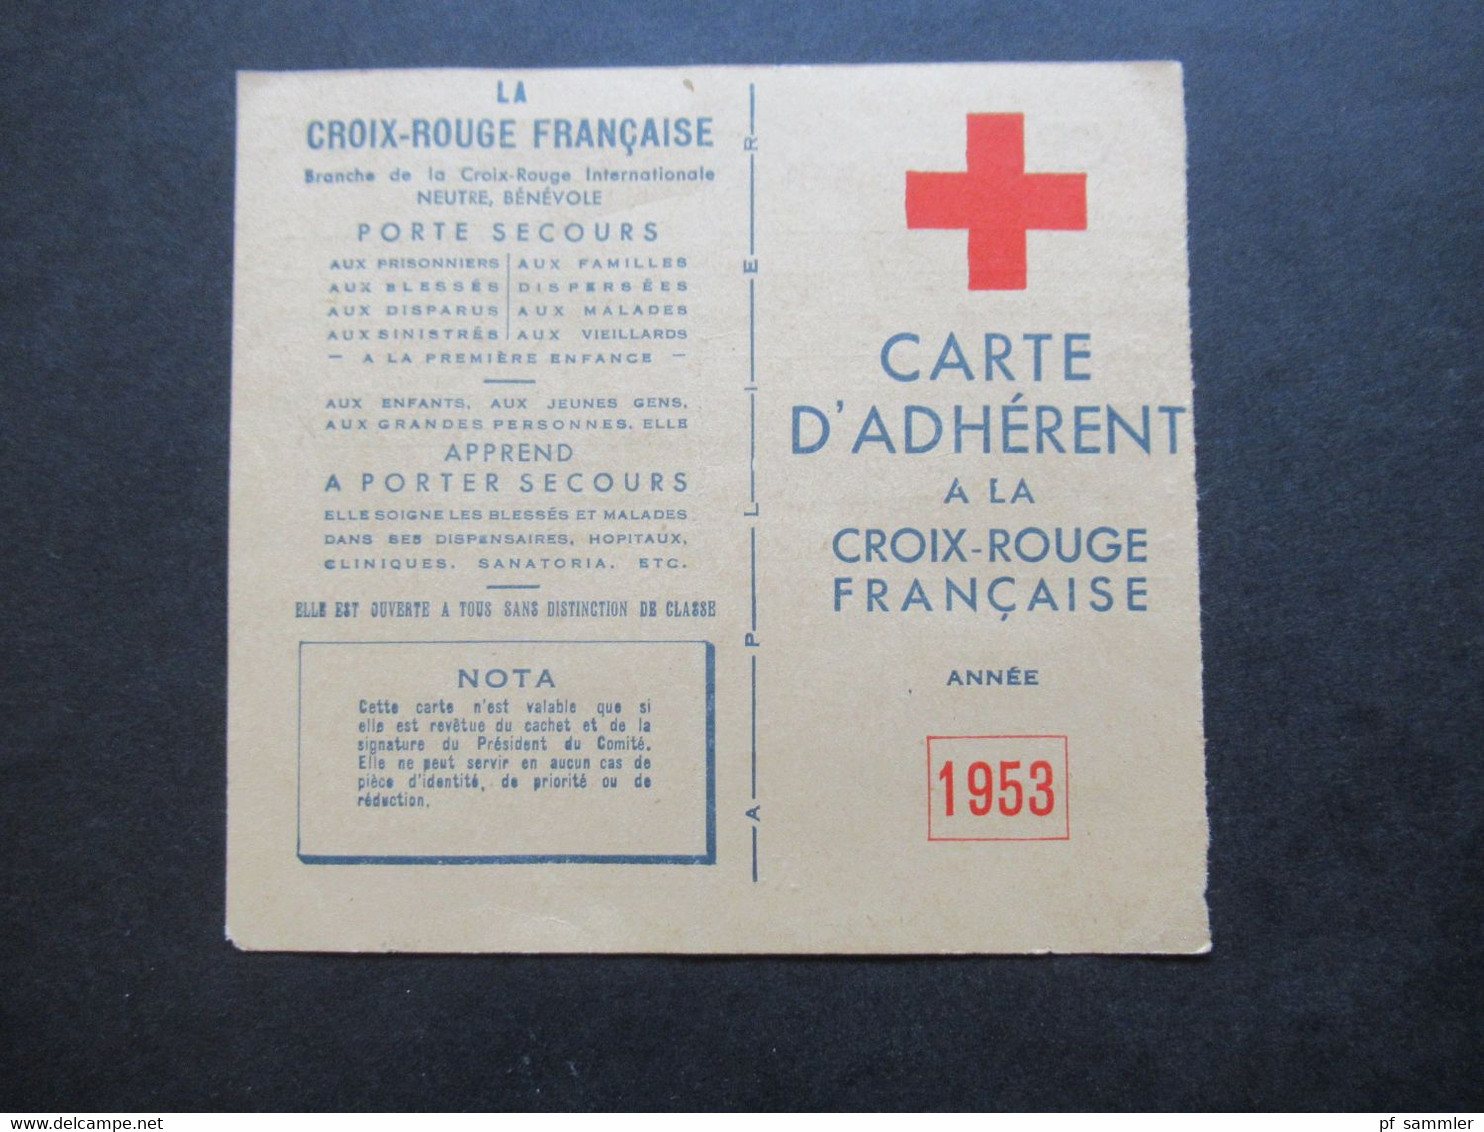 Frankreich 1953 Vignette Auf Carte D'Adherent Croix Rouge Francaise Mit Stempel Und Signe Le President Du Comité - Vignetten (Erinnophilie)